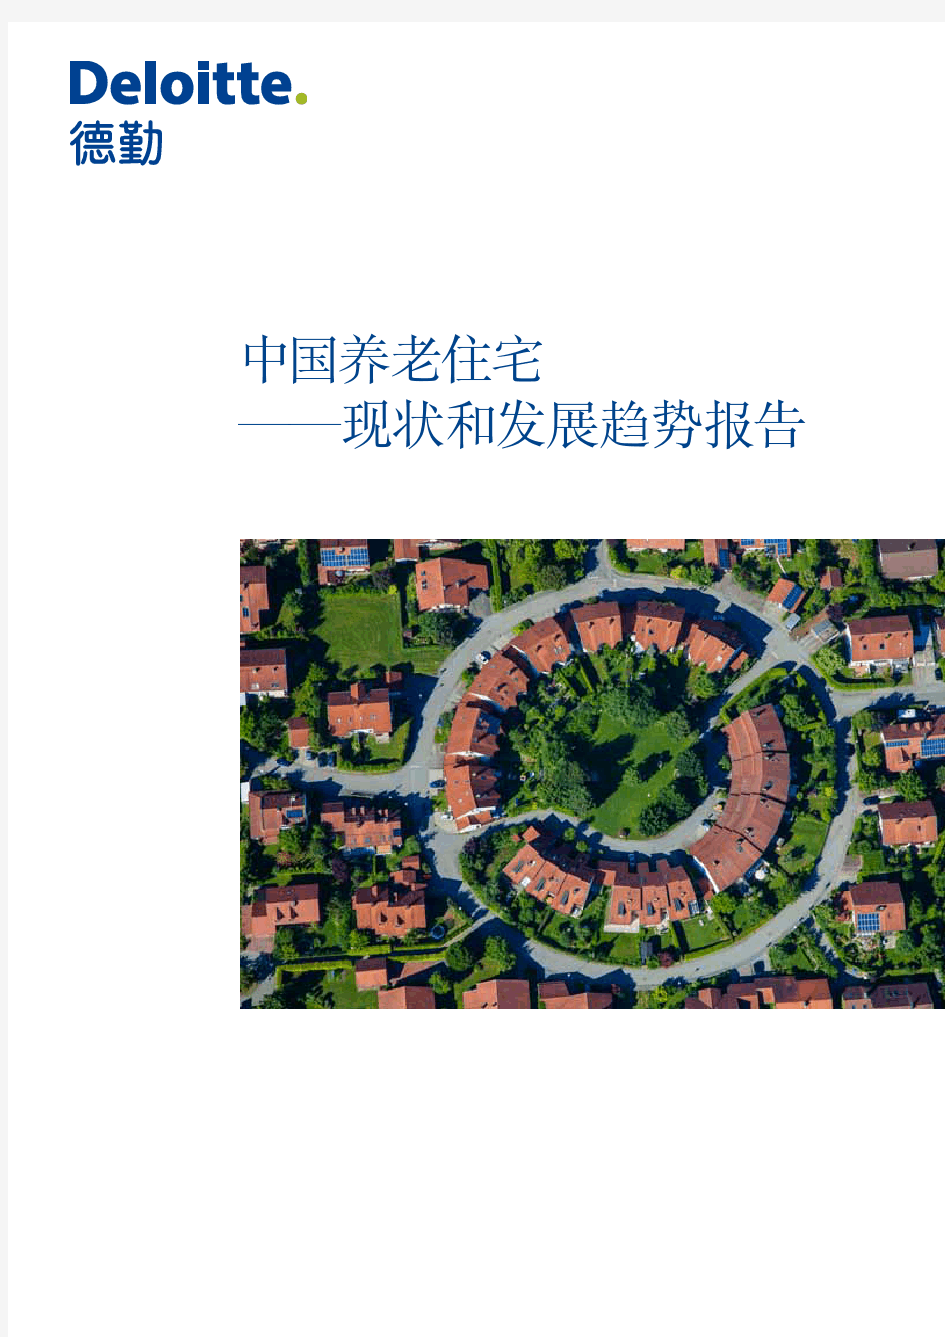 中国养老住宅——现状和发展趋势报告(德勤)